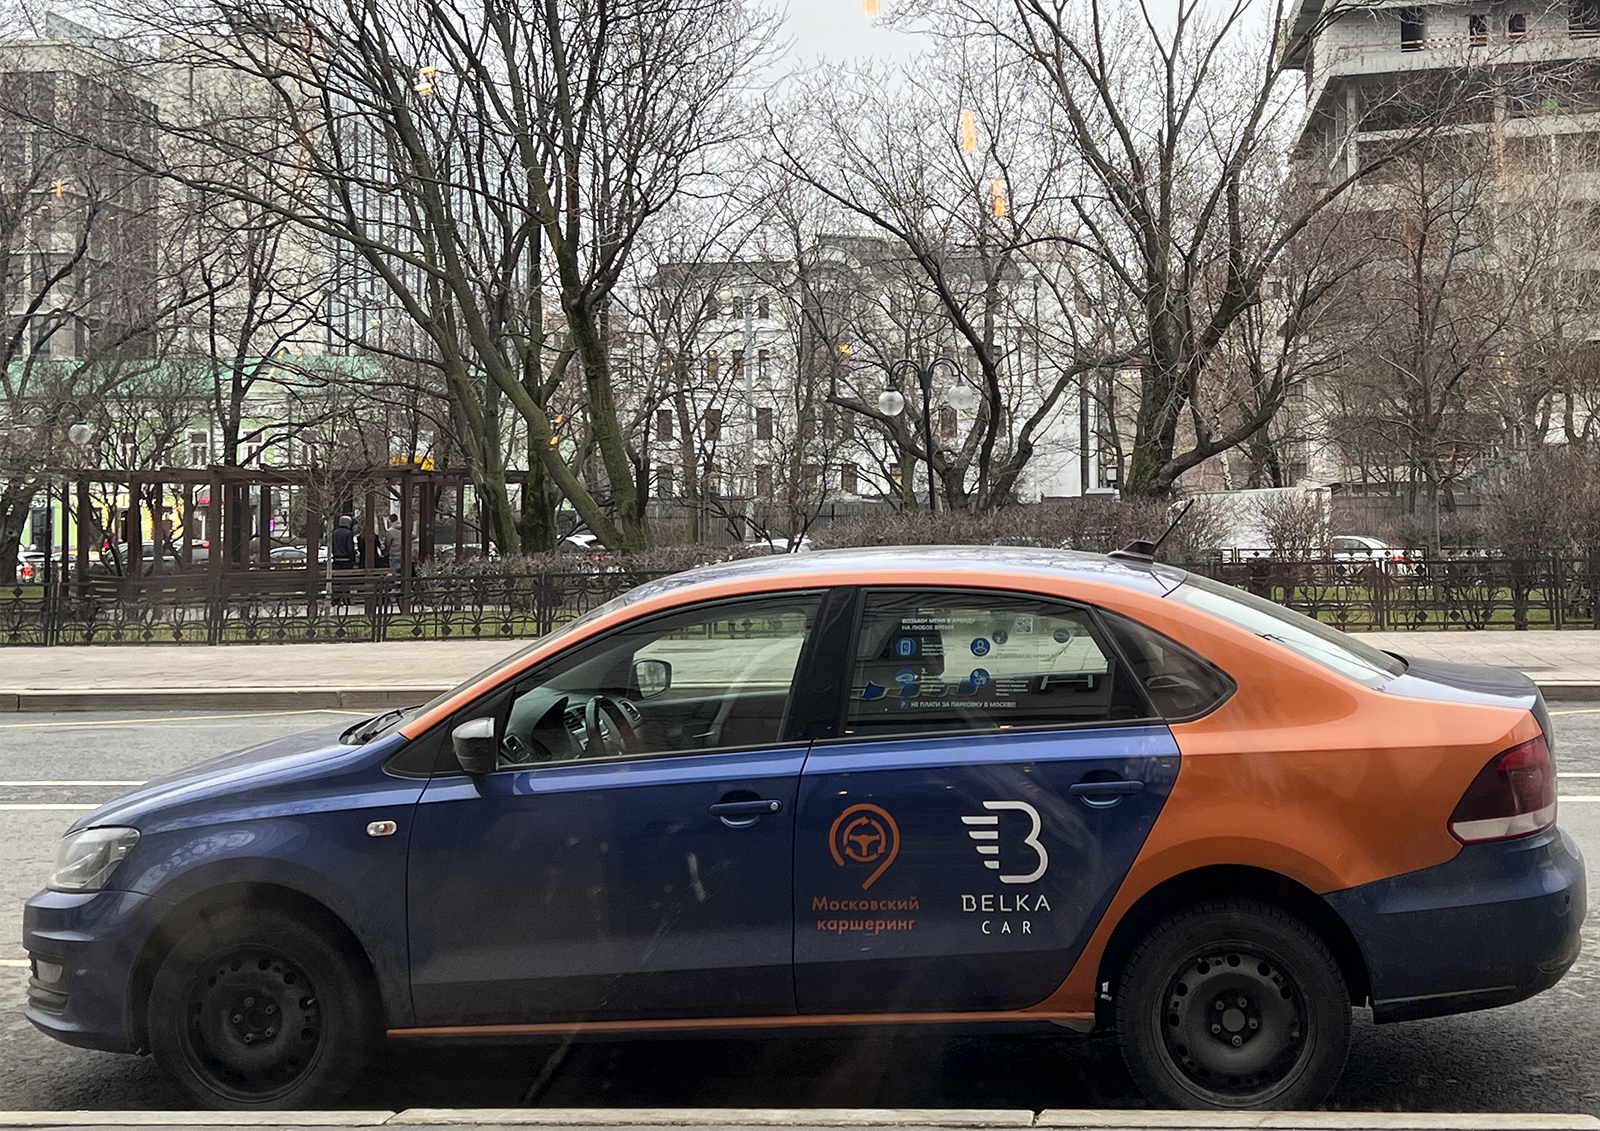 Тысячи россиян обратились в Роспотребнадзор по поводу качества услуг такси и каршеринга